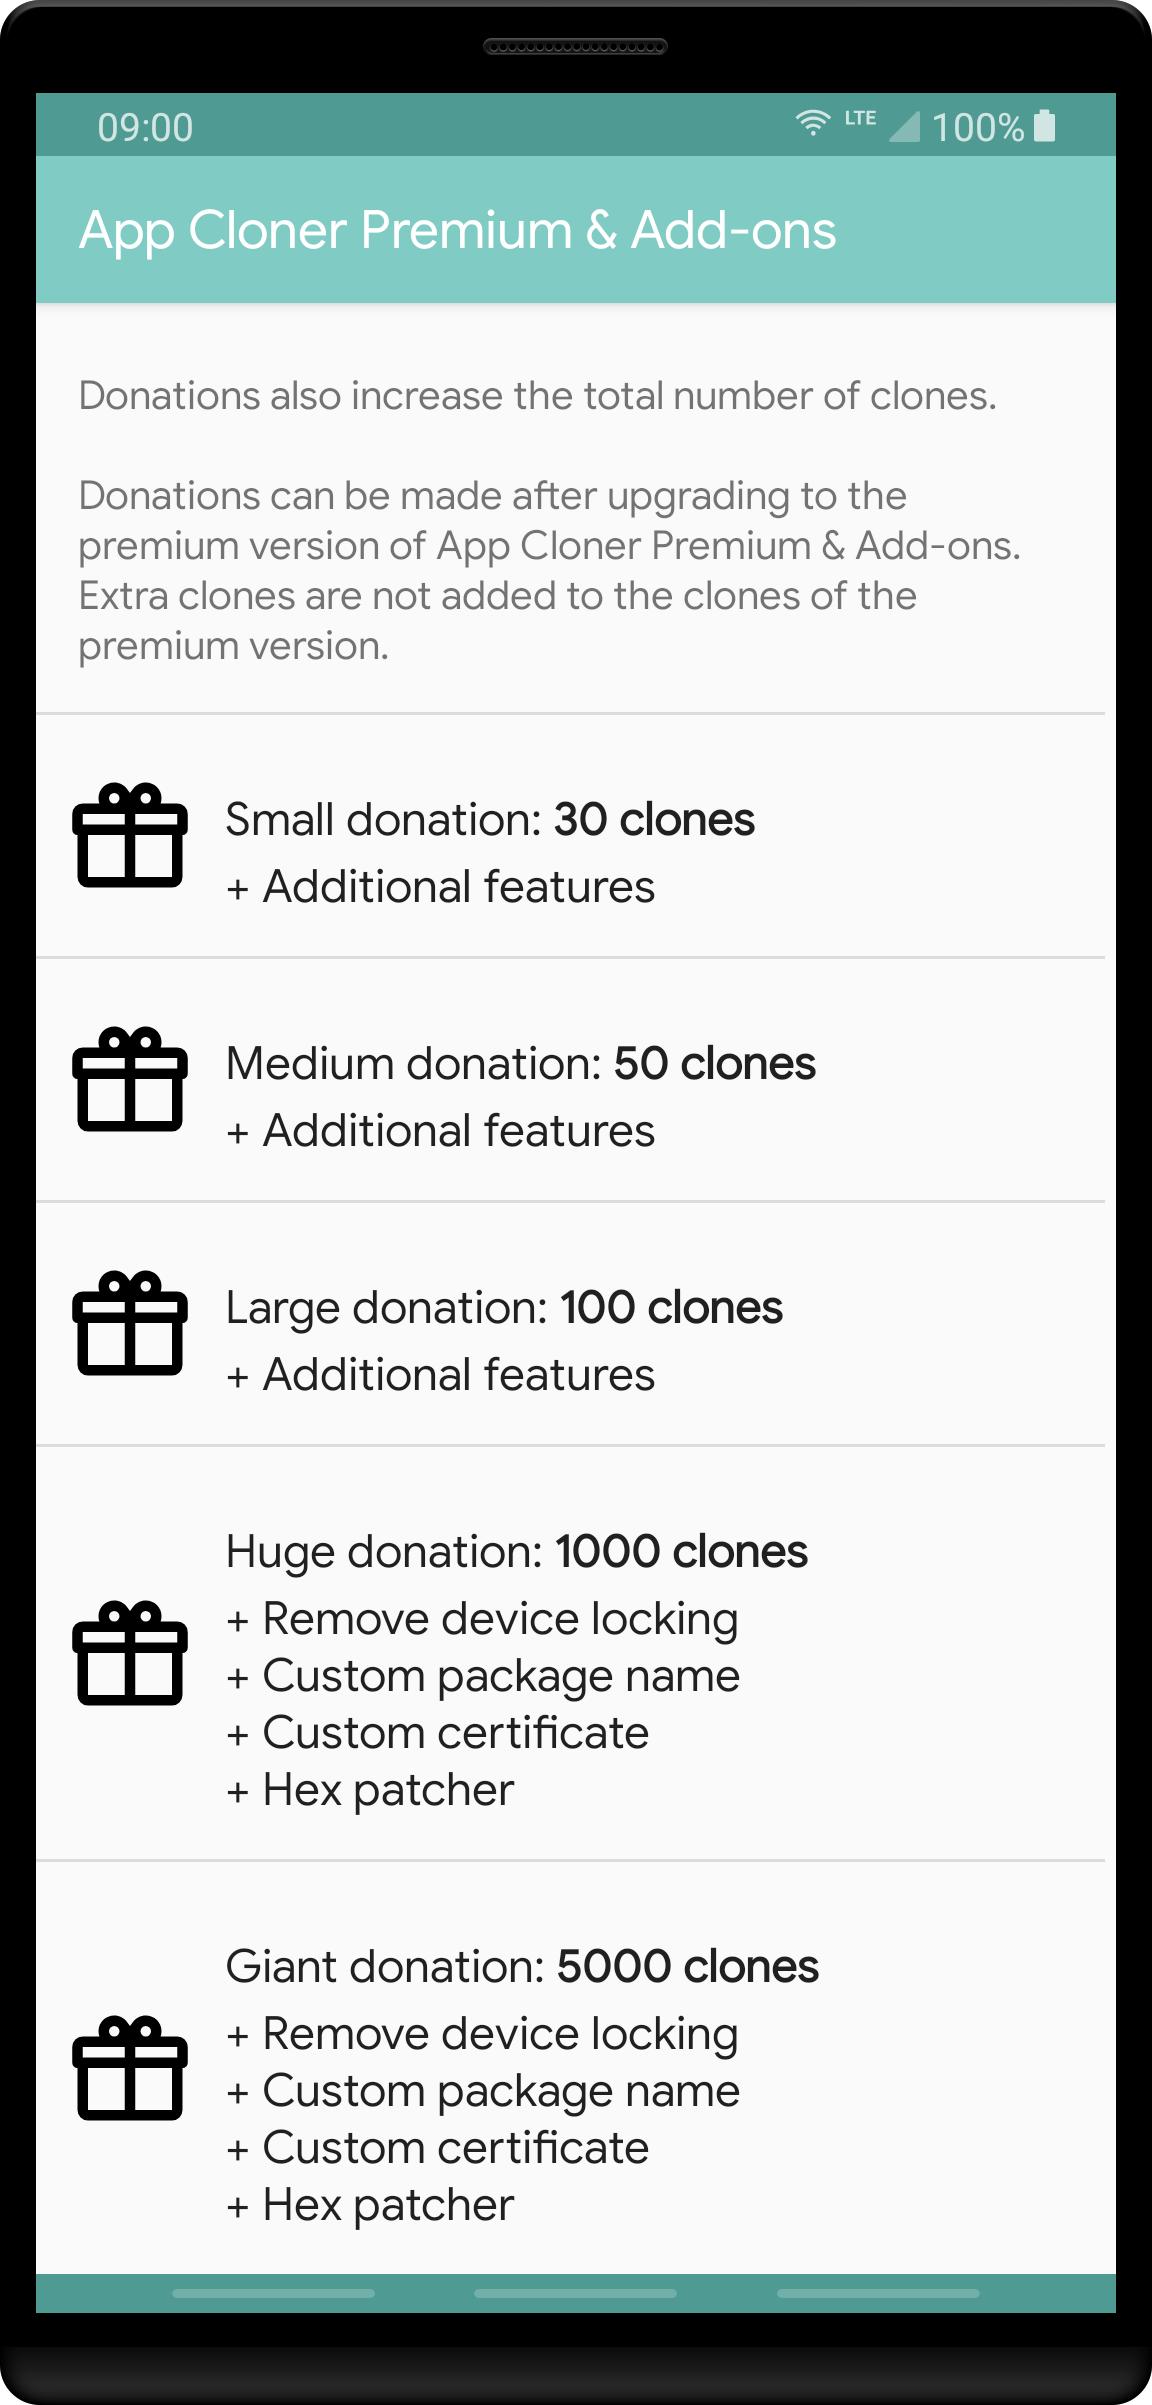 App Cloner Premium & Add-ons 2.8.1 Screenshot 2